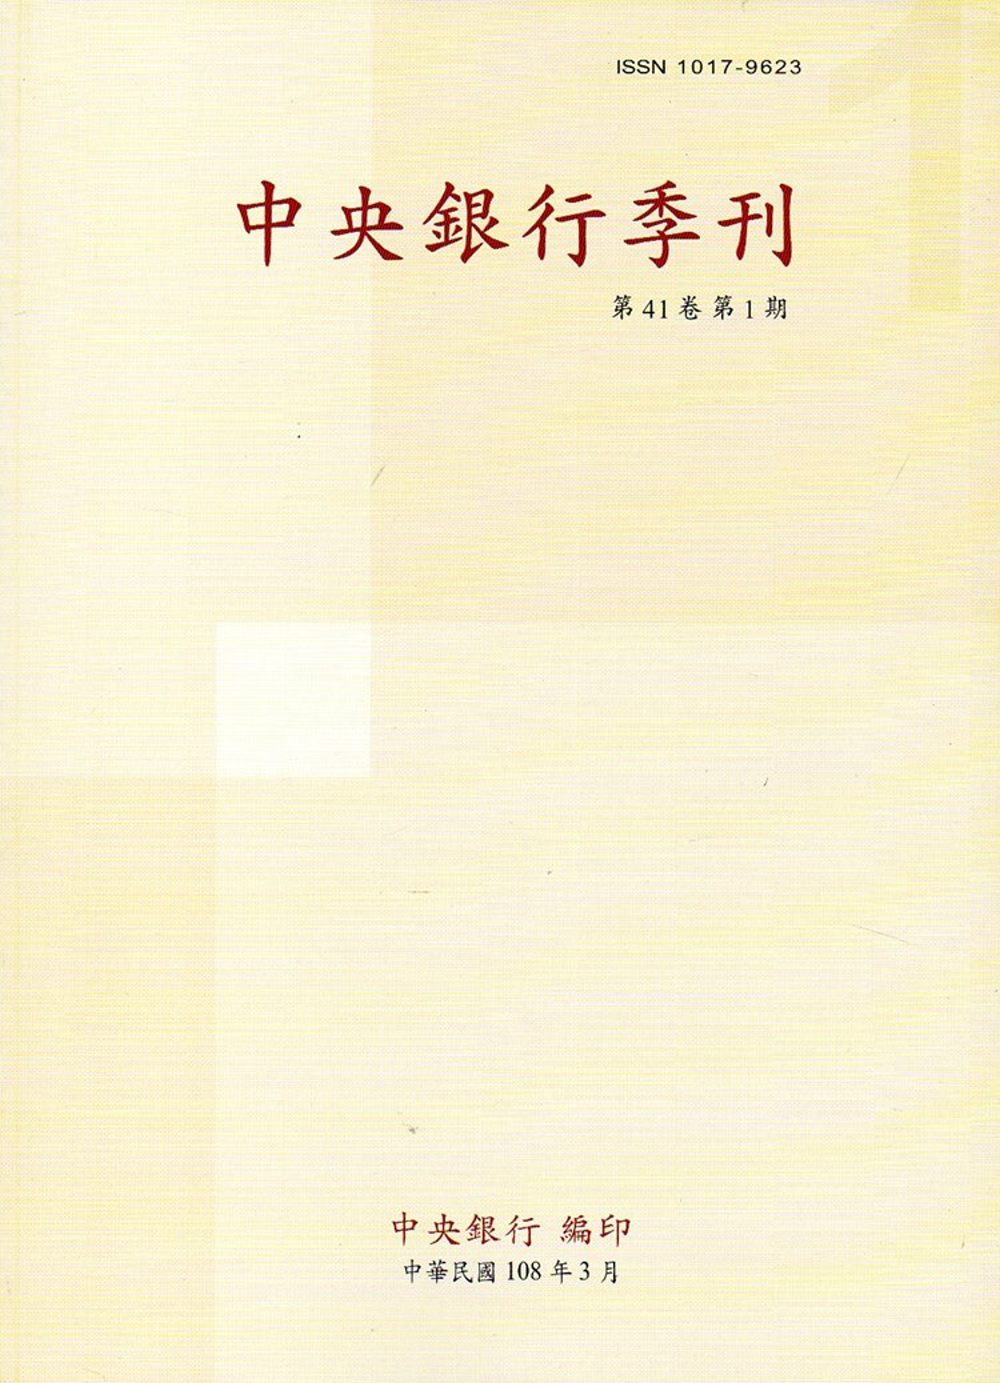 中央銀行季刊41卷1期(108.03)